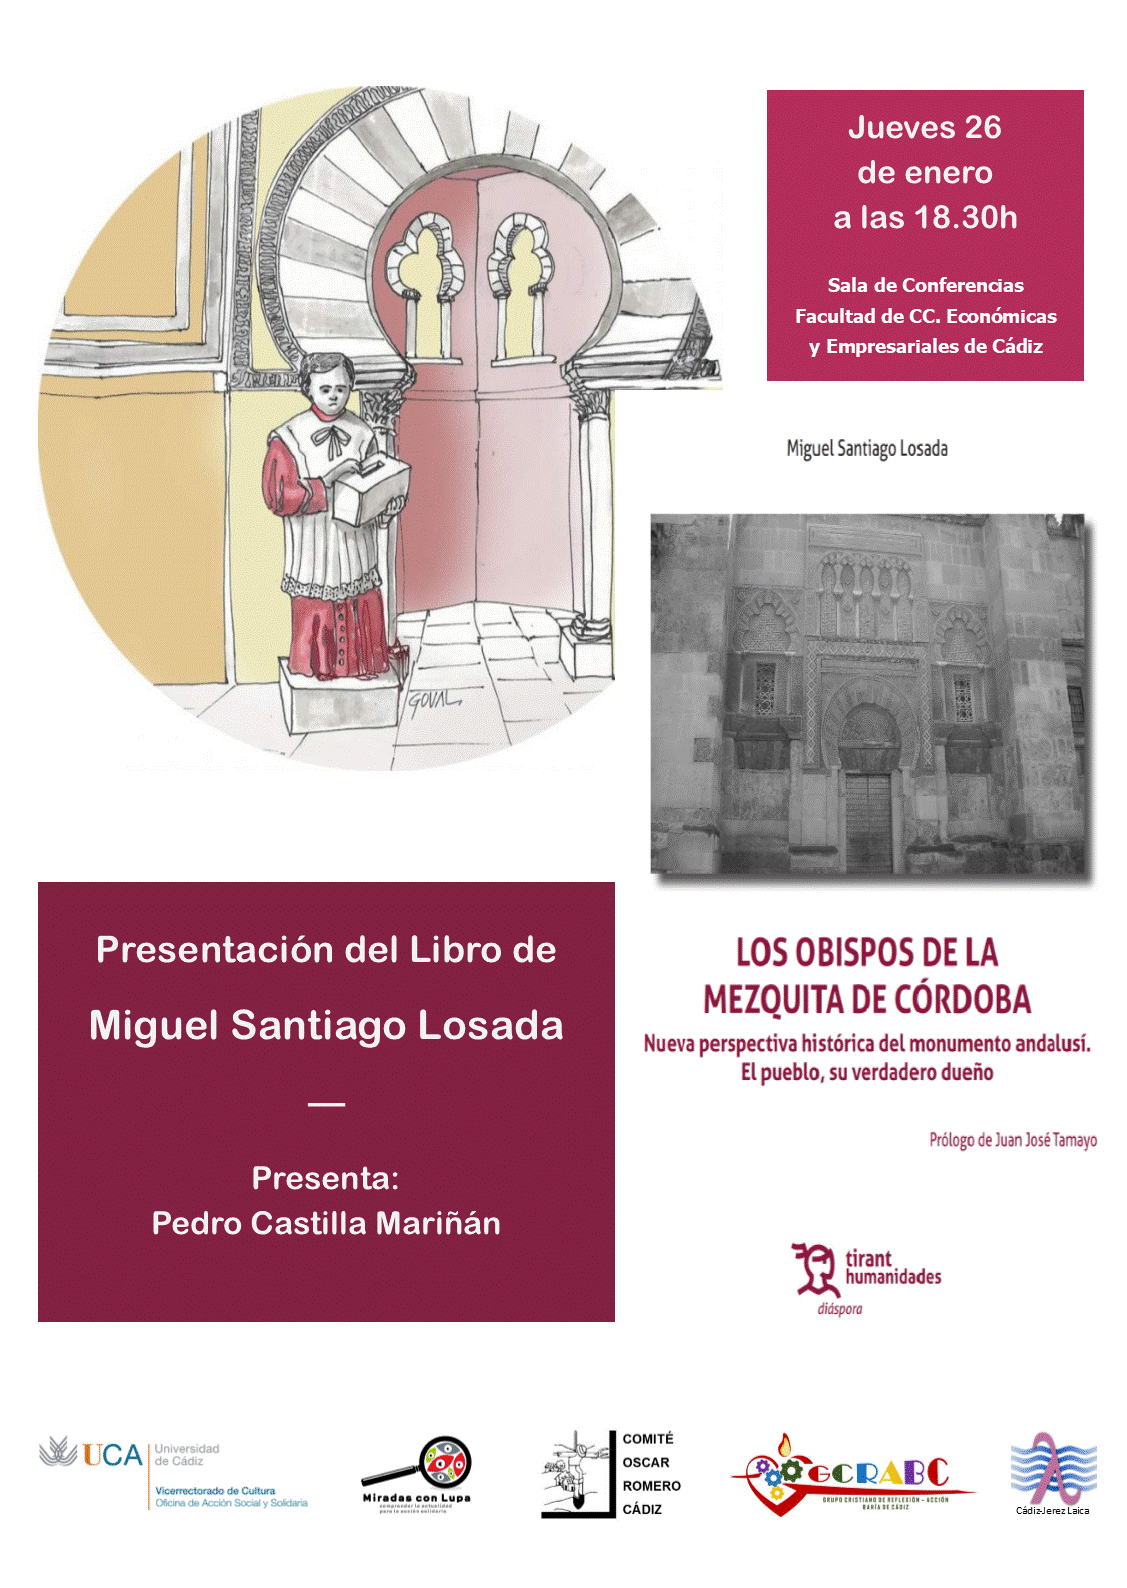 Cádiz 16 de enero. presentación del libro “Los Obispos de la Mezquita de Córdoba” de Miguel Santiago Losada